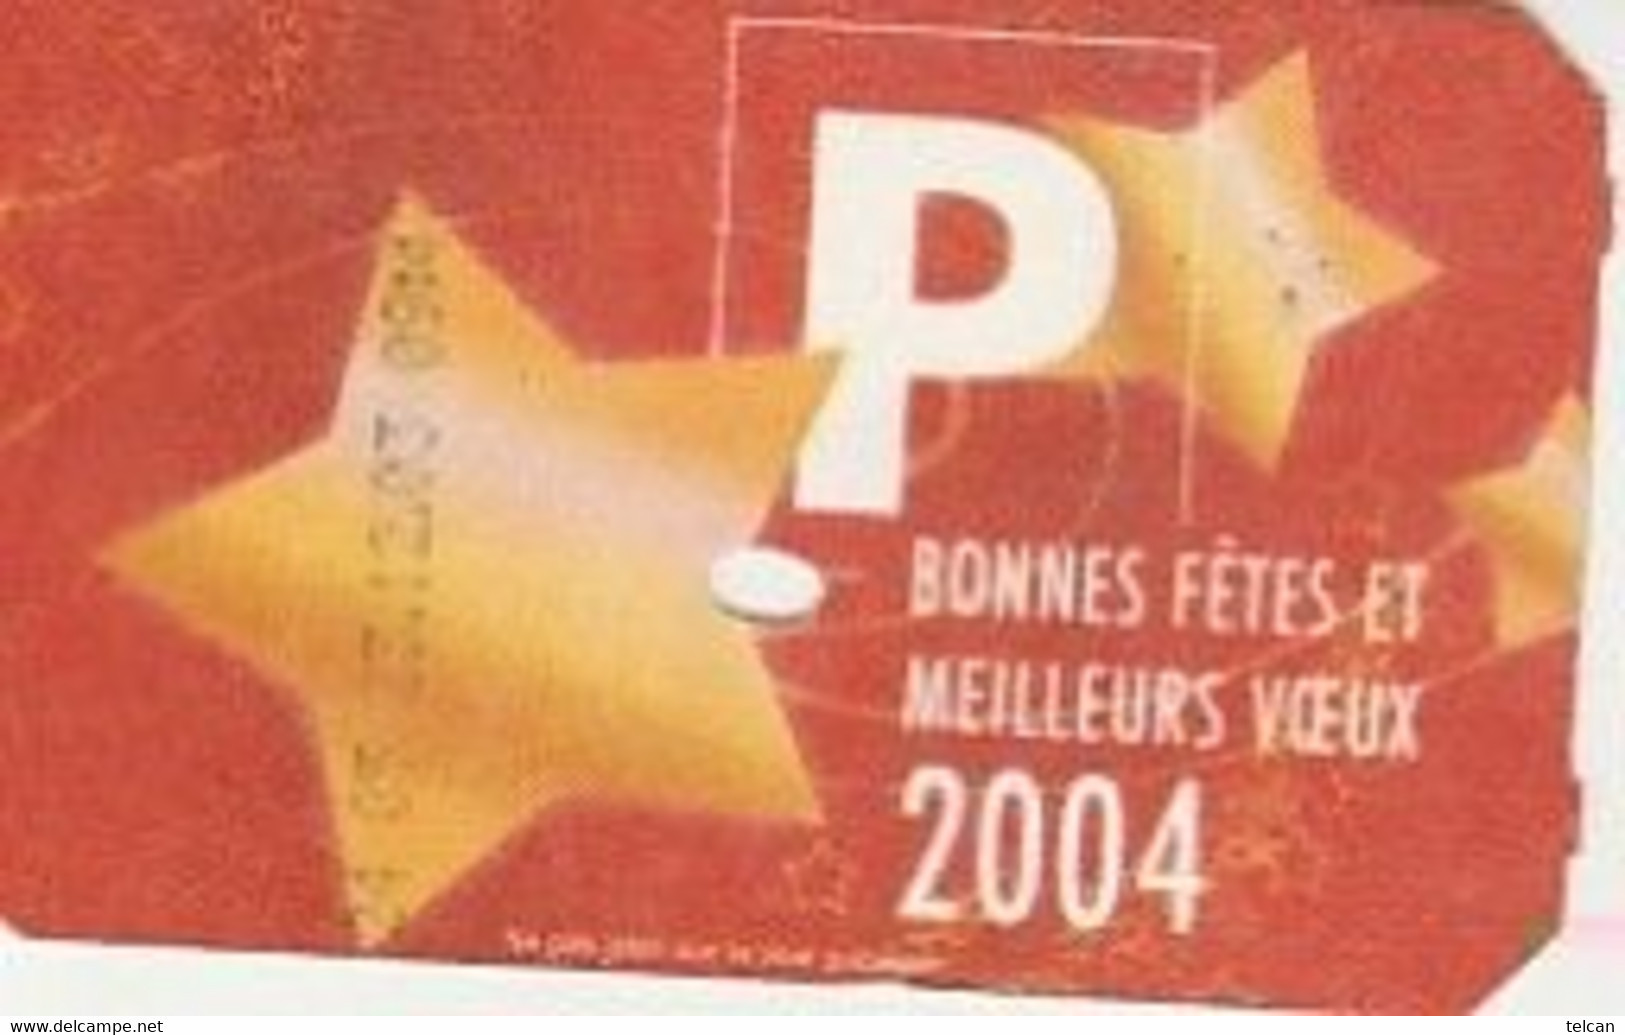 BONNES FETES ET MEILLEURS VOEUX 2004   Caen Cartonné - Scontrini Di Parcheggio